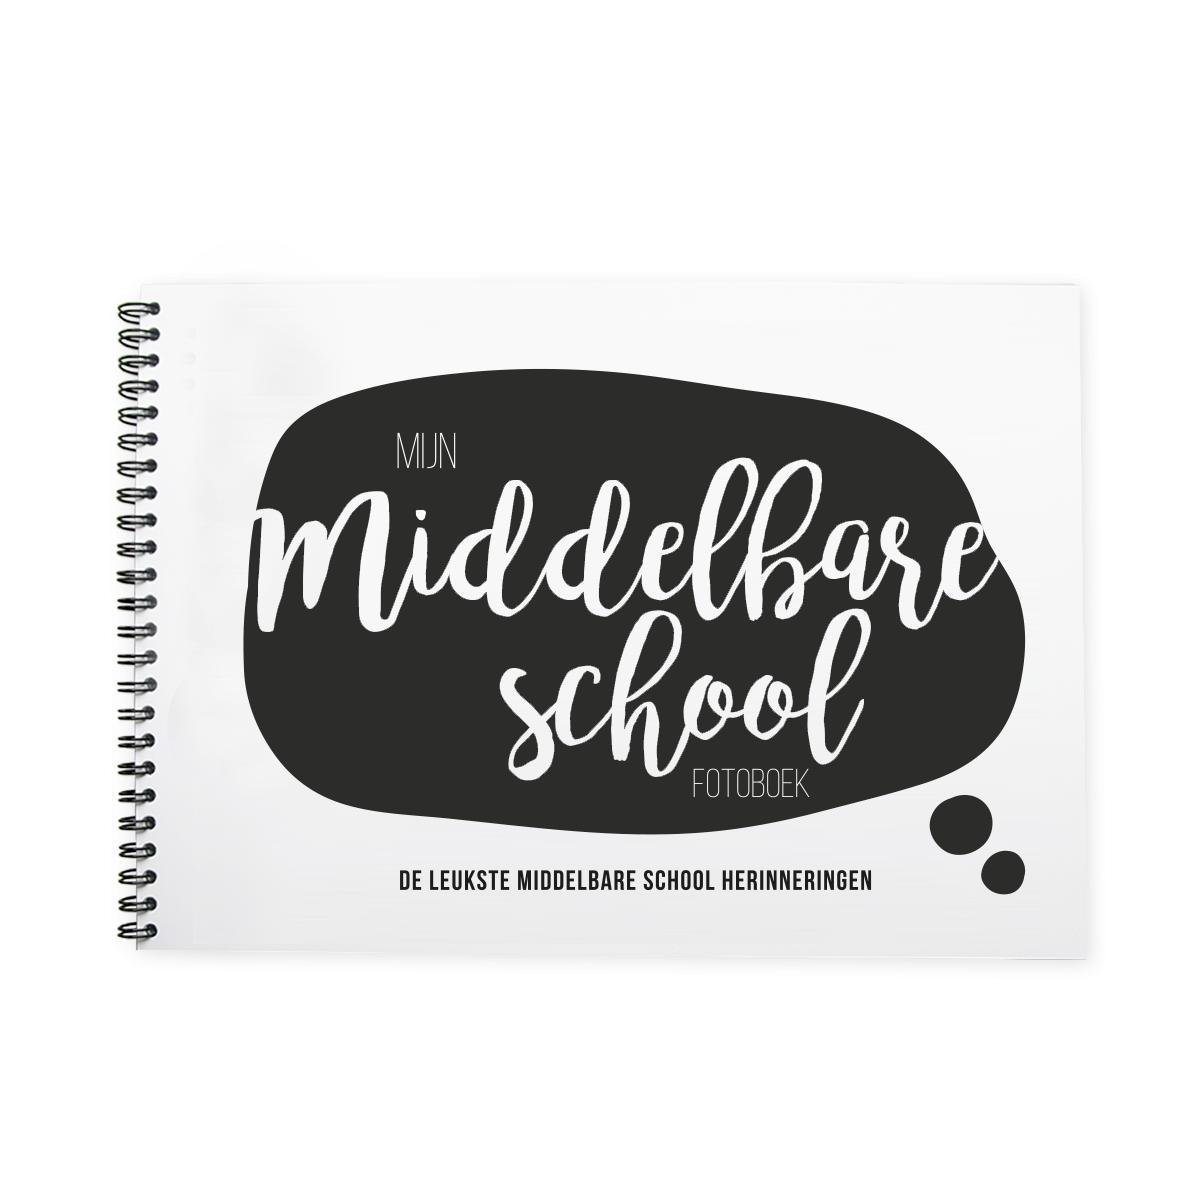 Opnieuw schieten beu Verraad Middelbare schoolfotoboek - Middelbare school - invulboek - zwart/wit -  ringband -... | bol.com